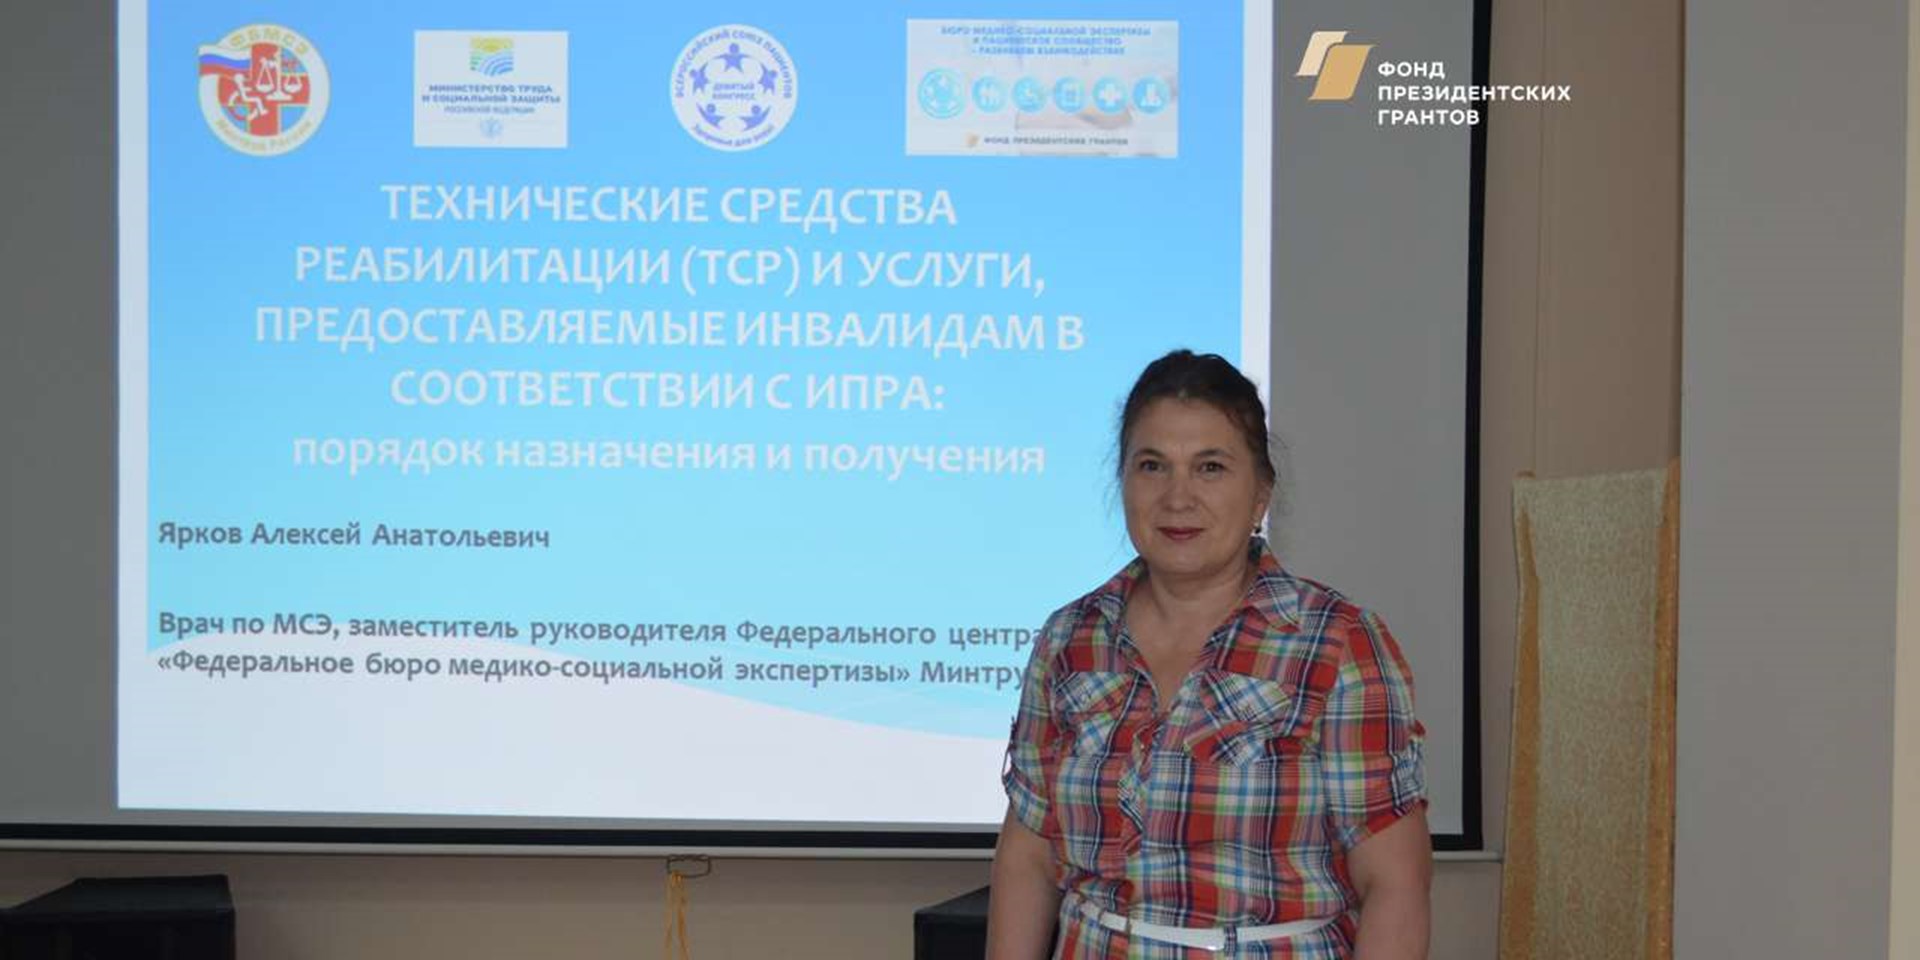 Йошкар-Ола 16.05.2019 Первый информационный семинар по проблемам МСЭ в Республике Марий Эл